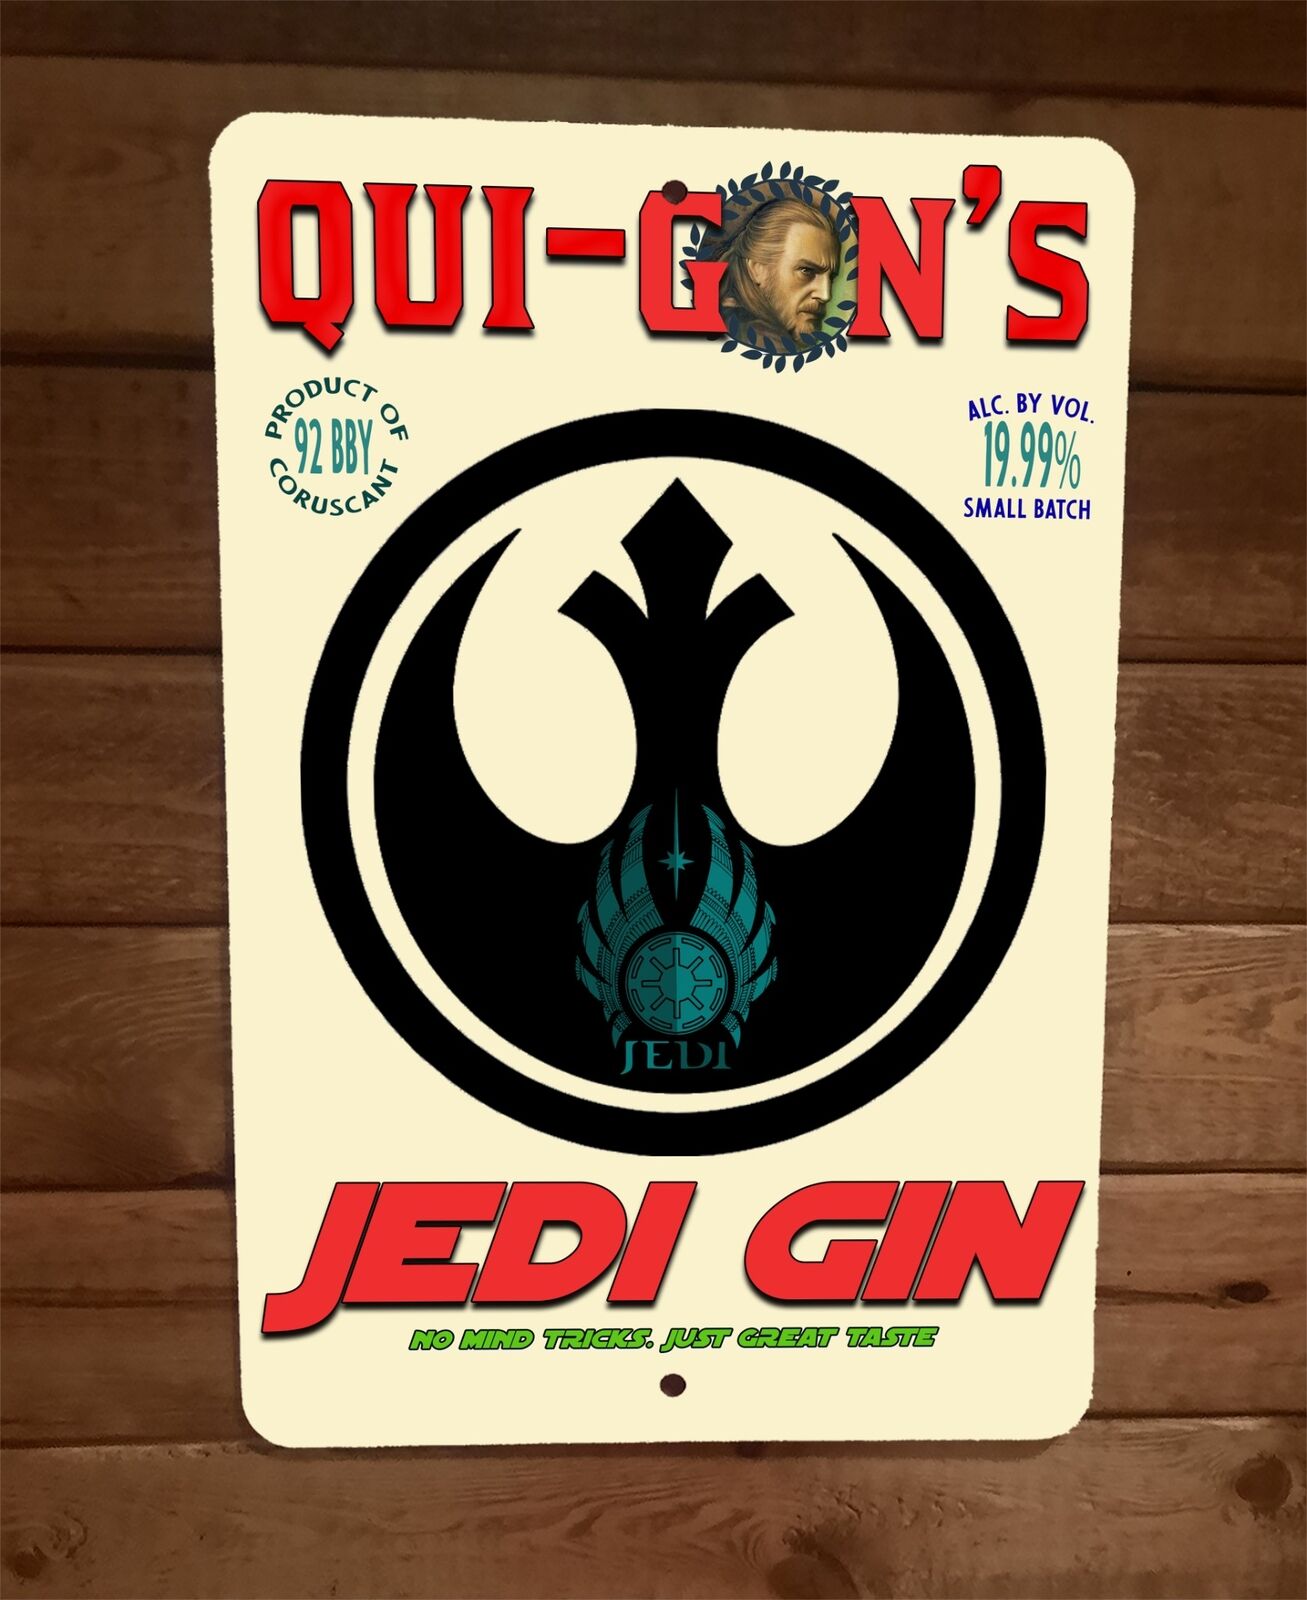 Qui Gons Jedi Gin No Mind Tricks Just Great Taste 8x12 Metal Wall Sign